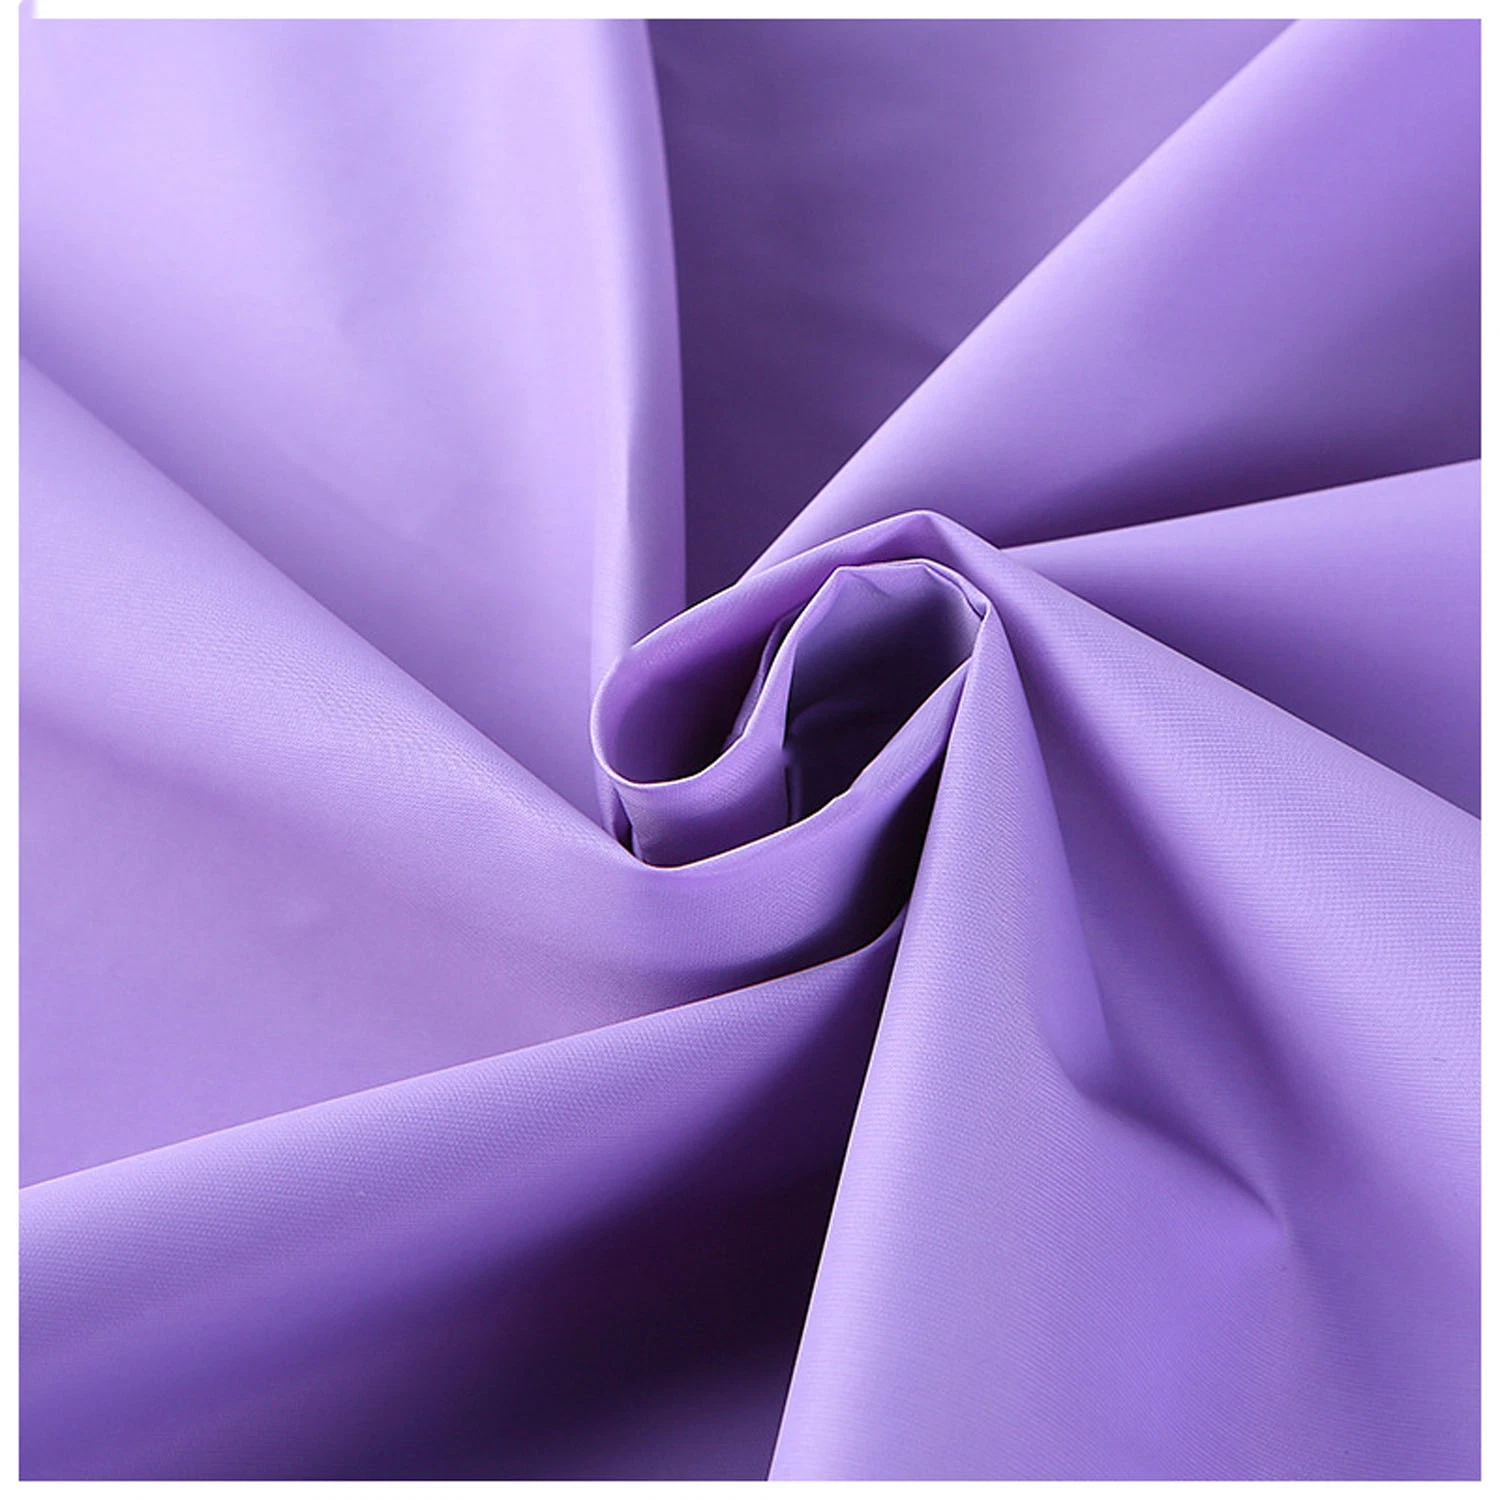 Textile Nylon Spandex Stretch Power Fabric for Sportswear/Bikini/Swim Wear